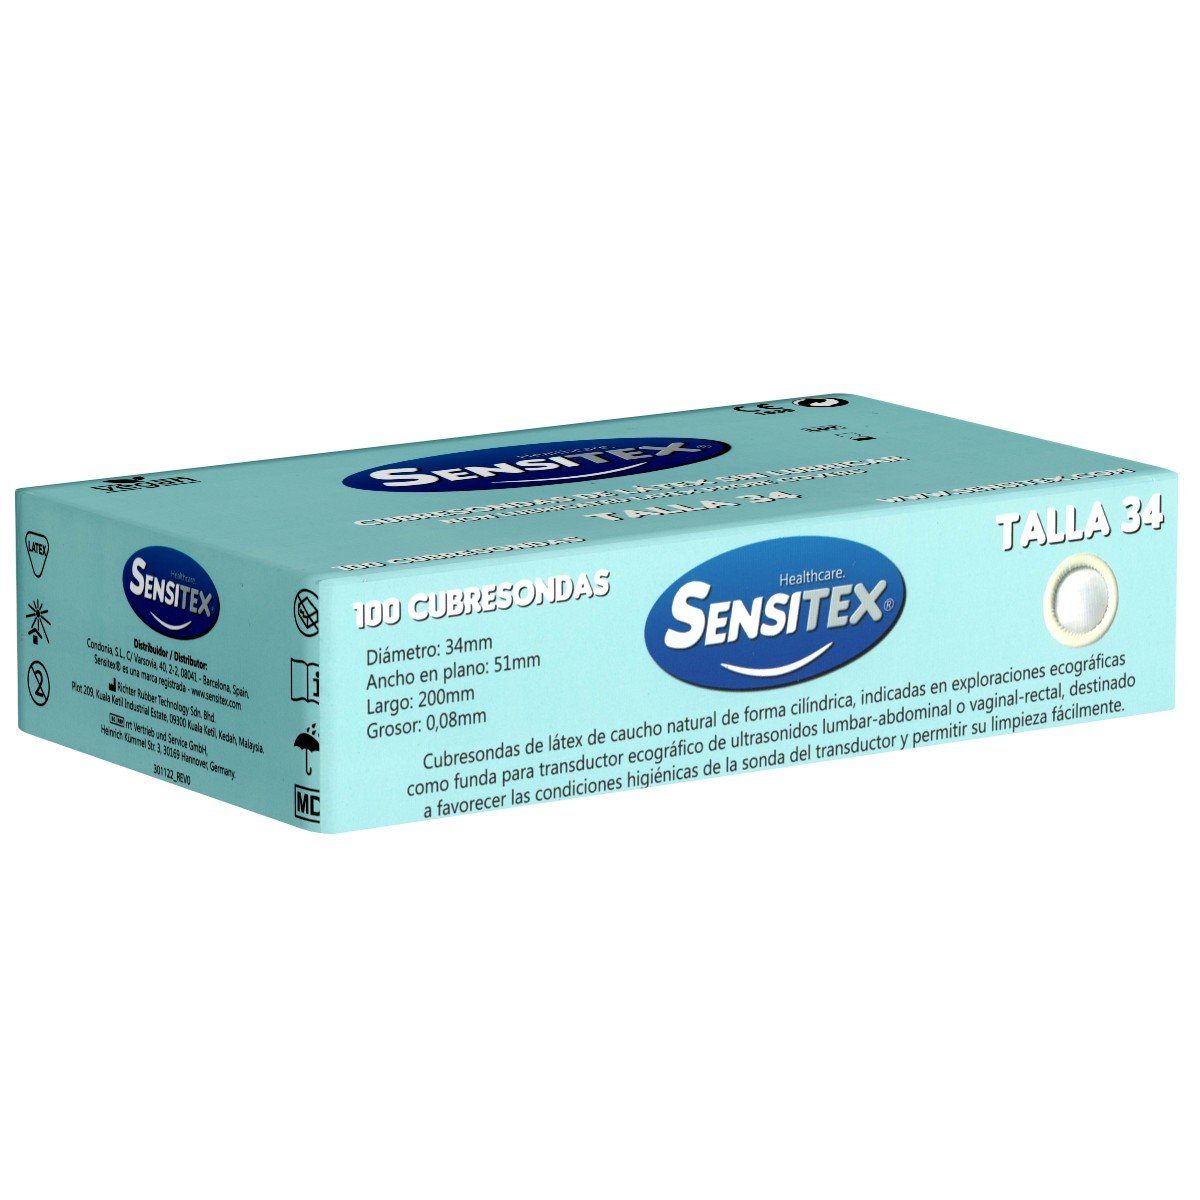 Sensitex Kondome Cubresondas (Probe Covers) Packung mit, 100 St., Vorratsbox, vegane Ultraschallhüllen, trocken und ohne Reservoir